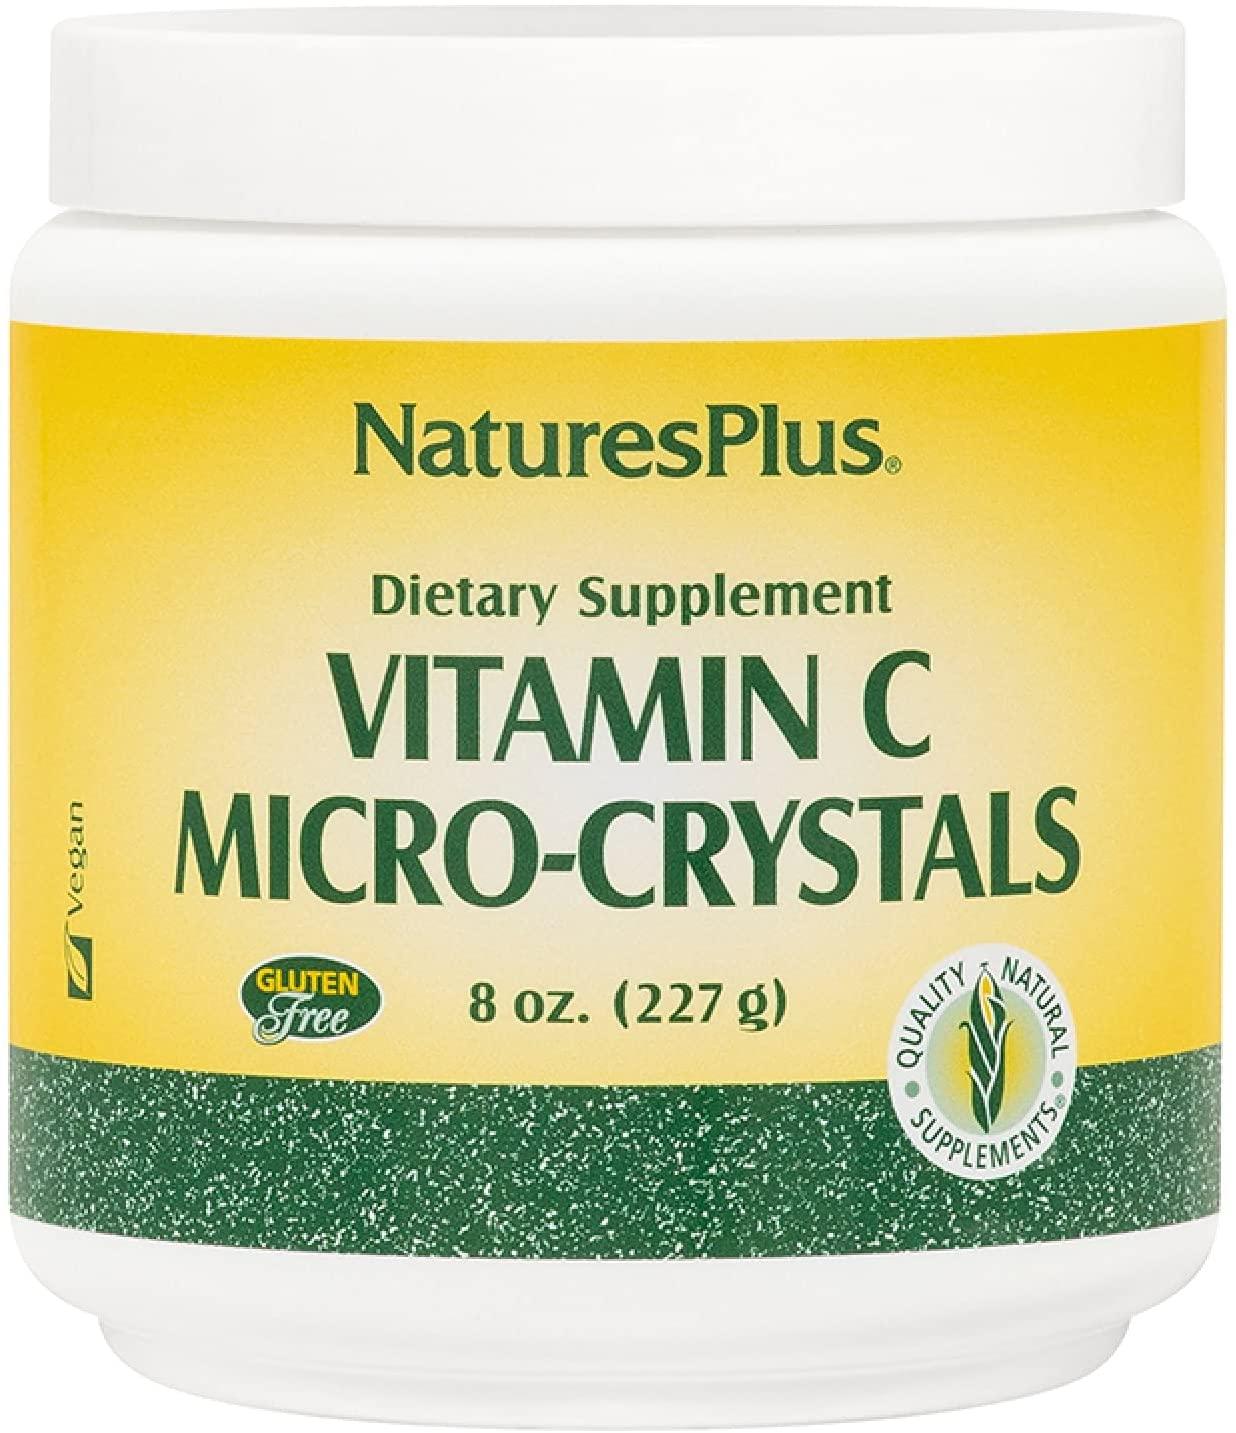 NaturesPlus Vitamine C Micro-Crystals - mondialpharma.com